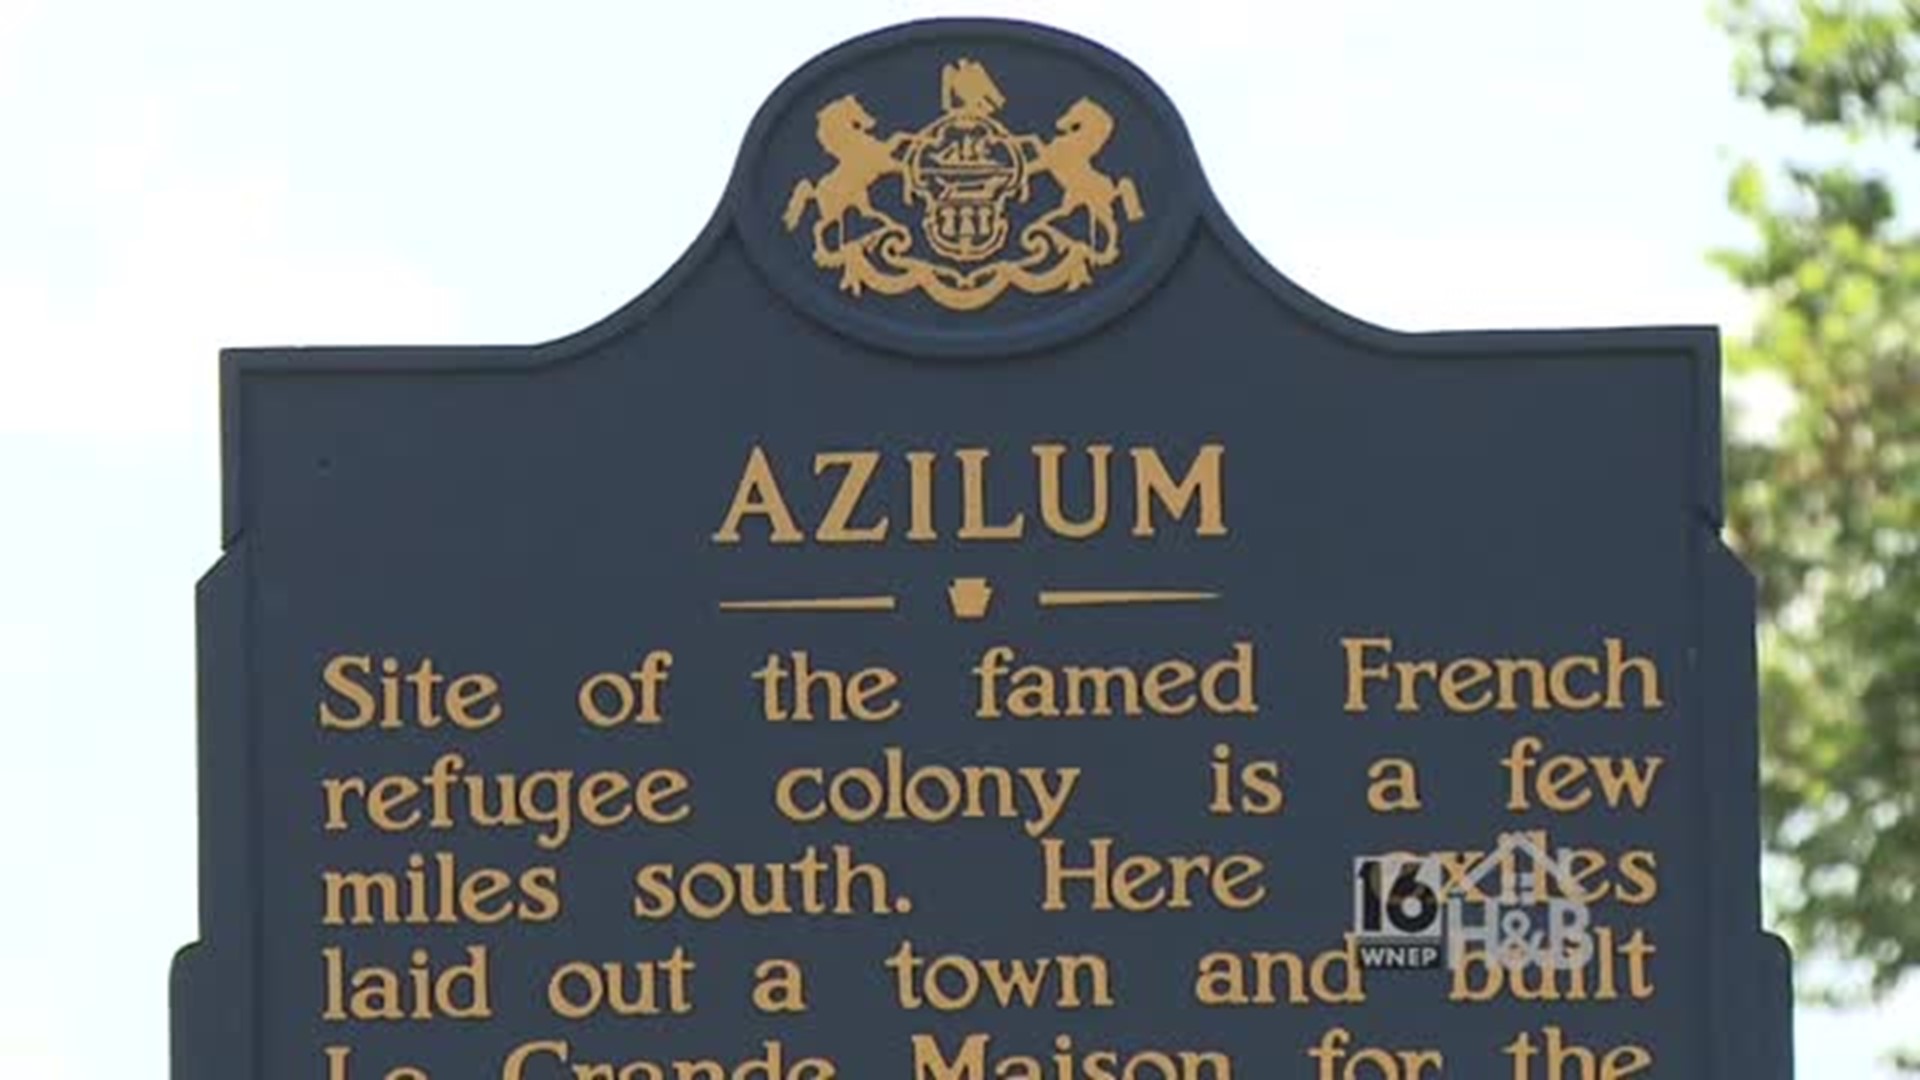 HomeTown History - French Azilum